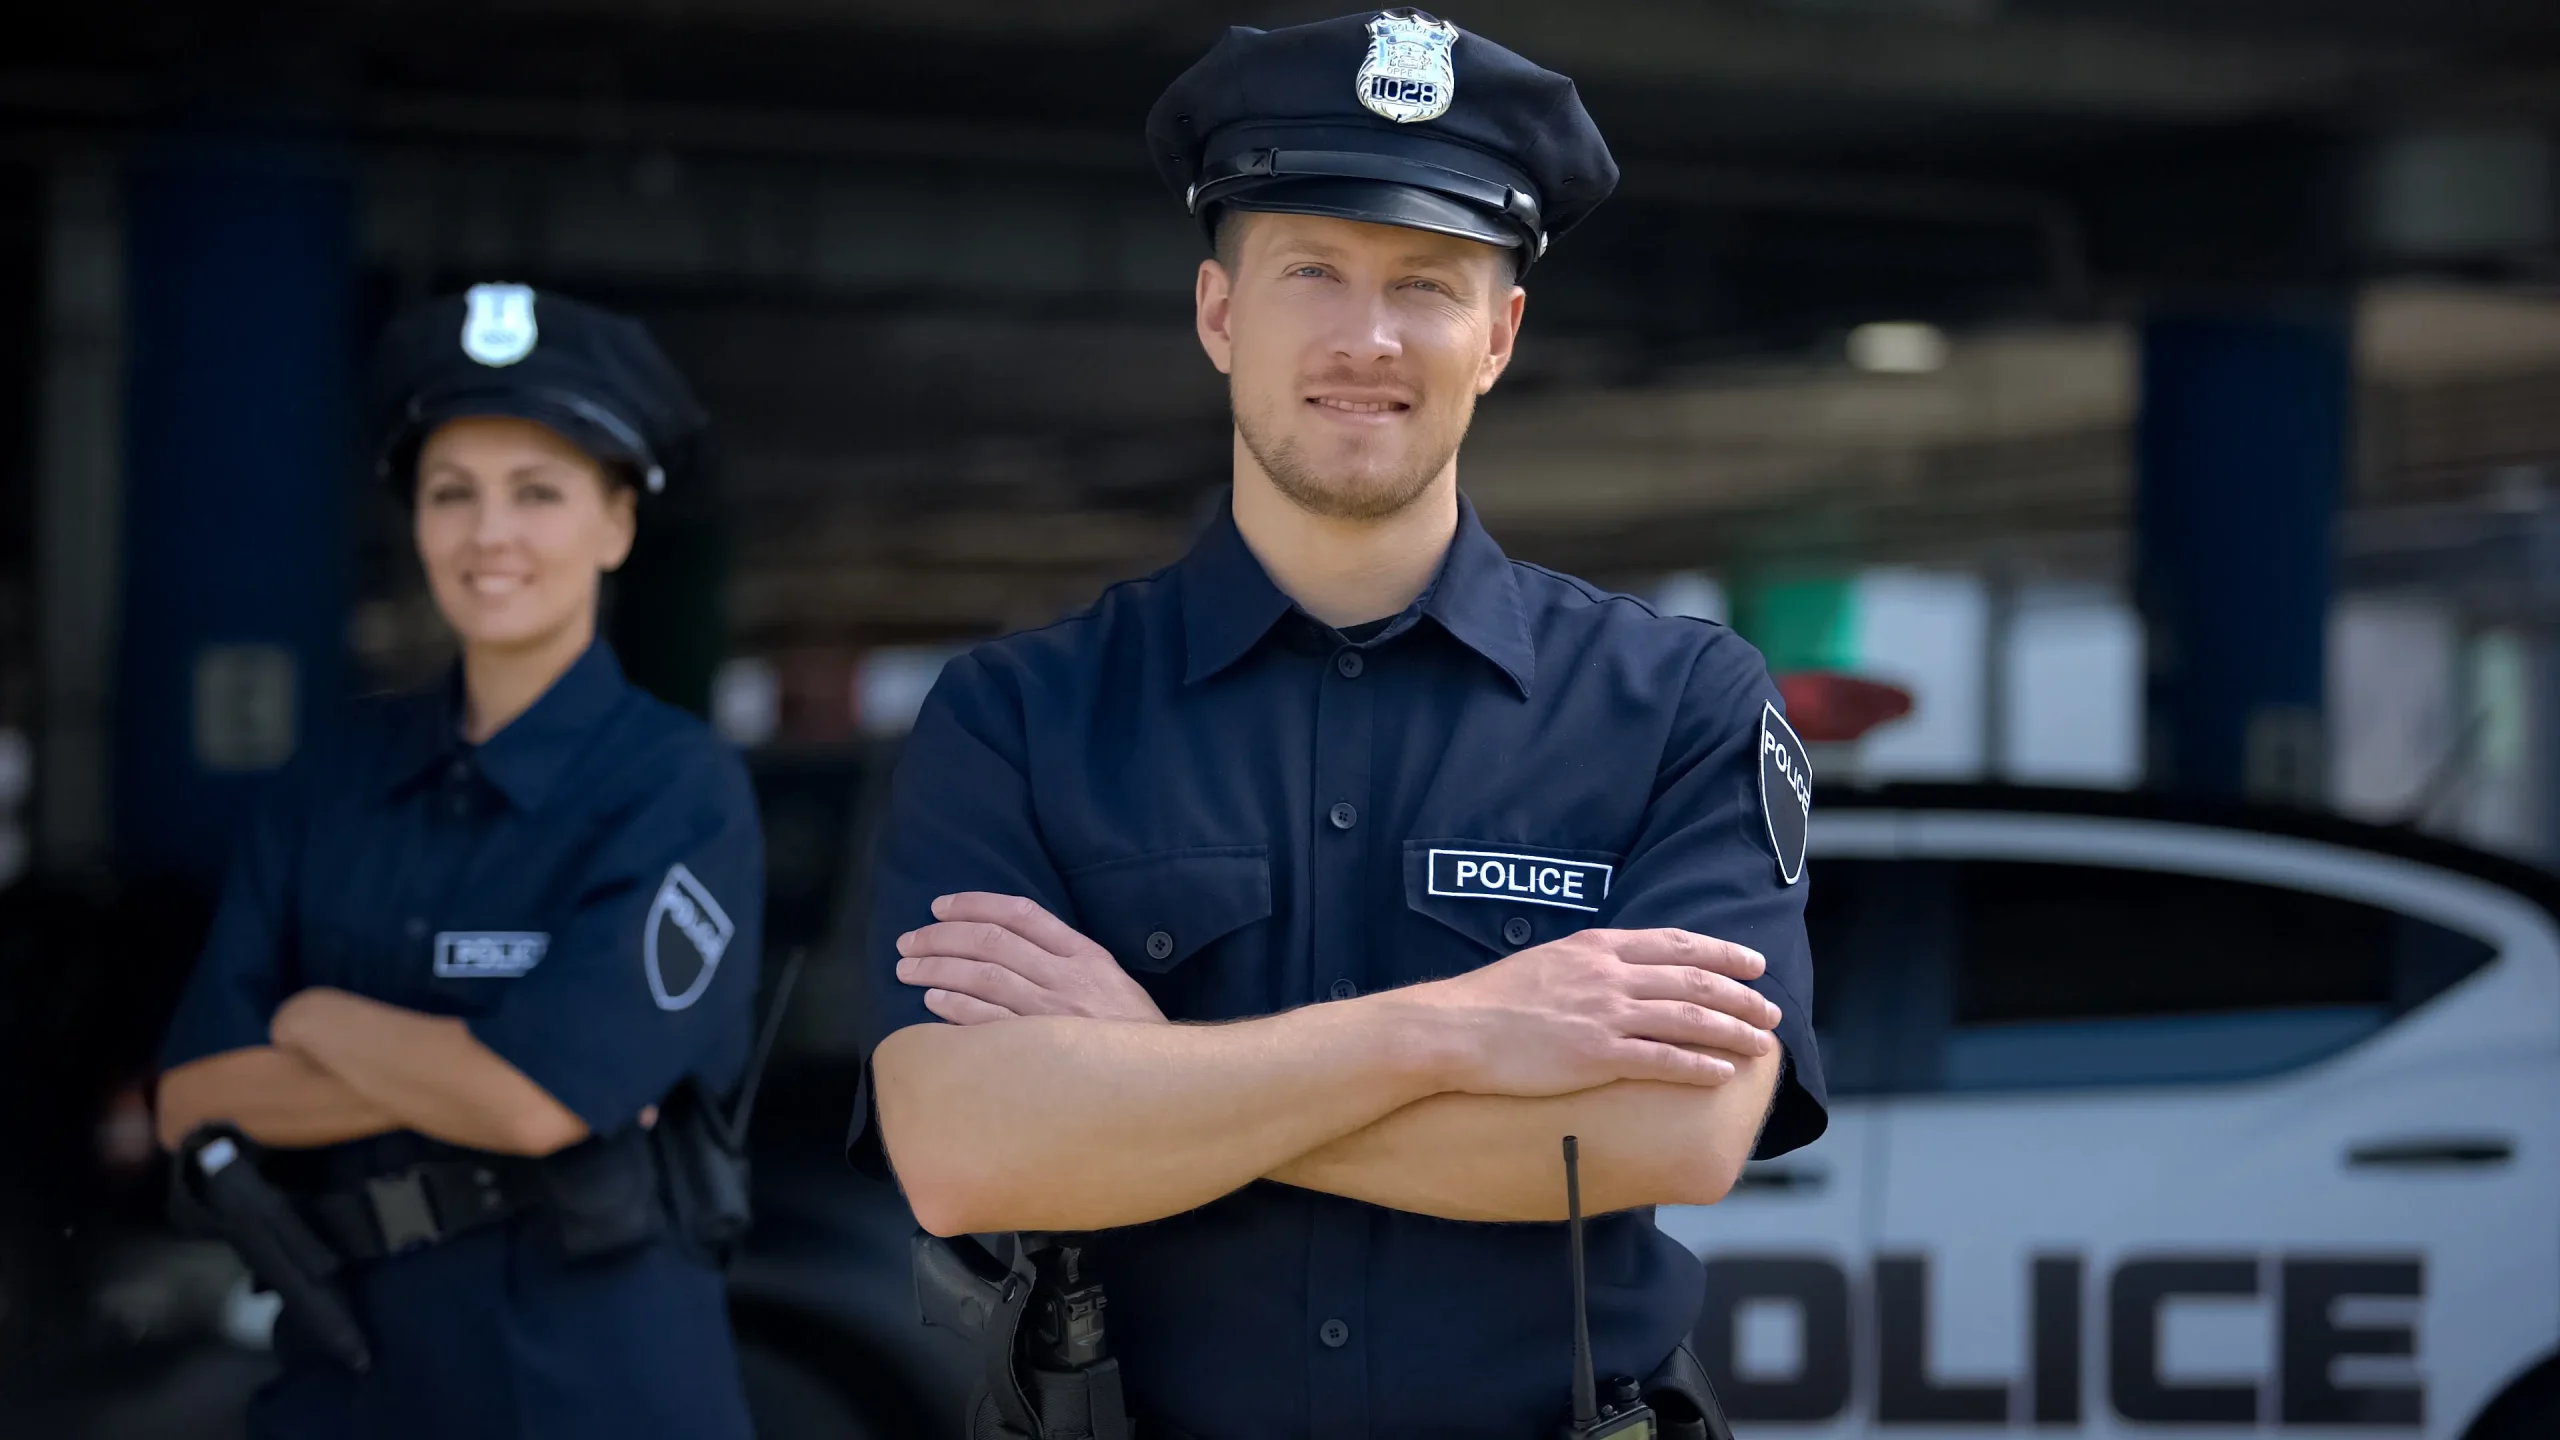 DELPOE Police Exam Prep Course